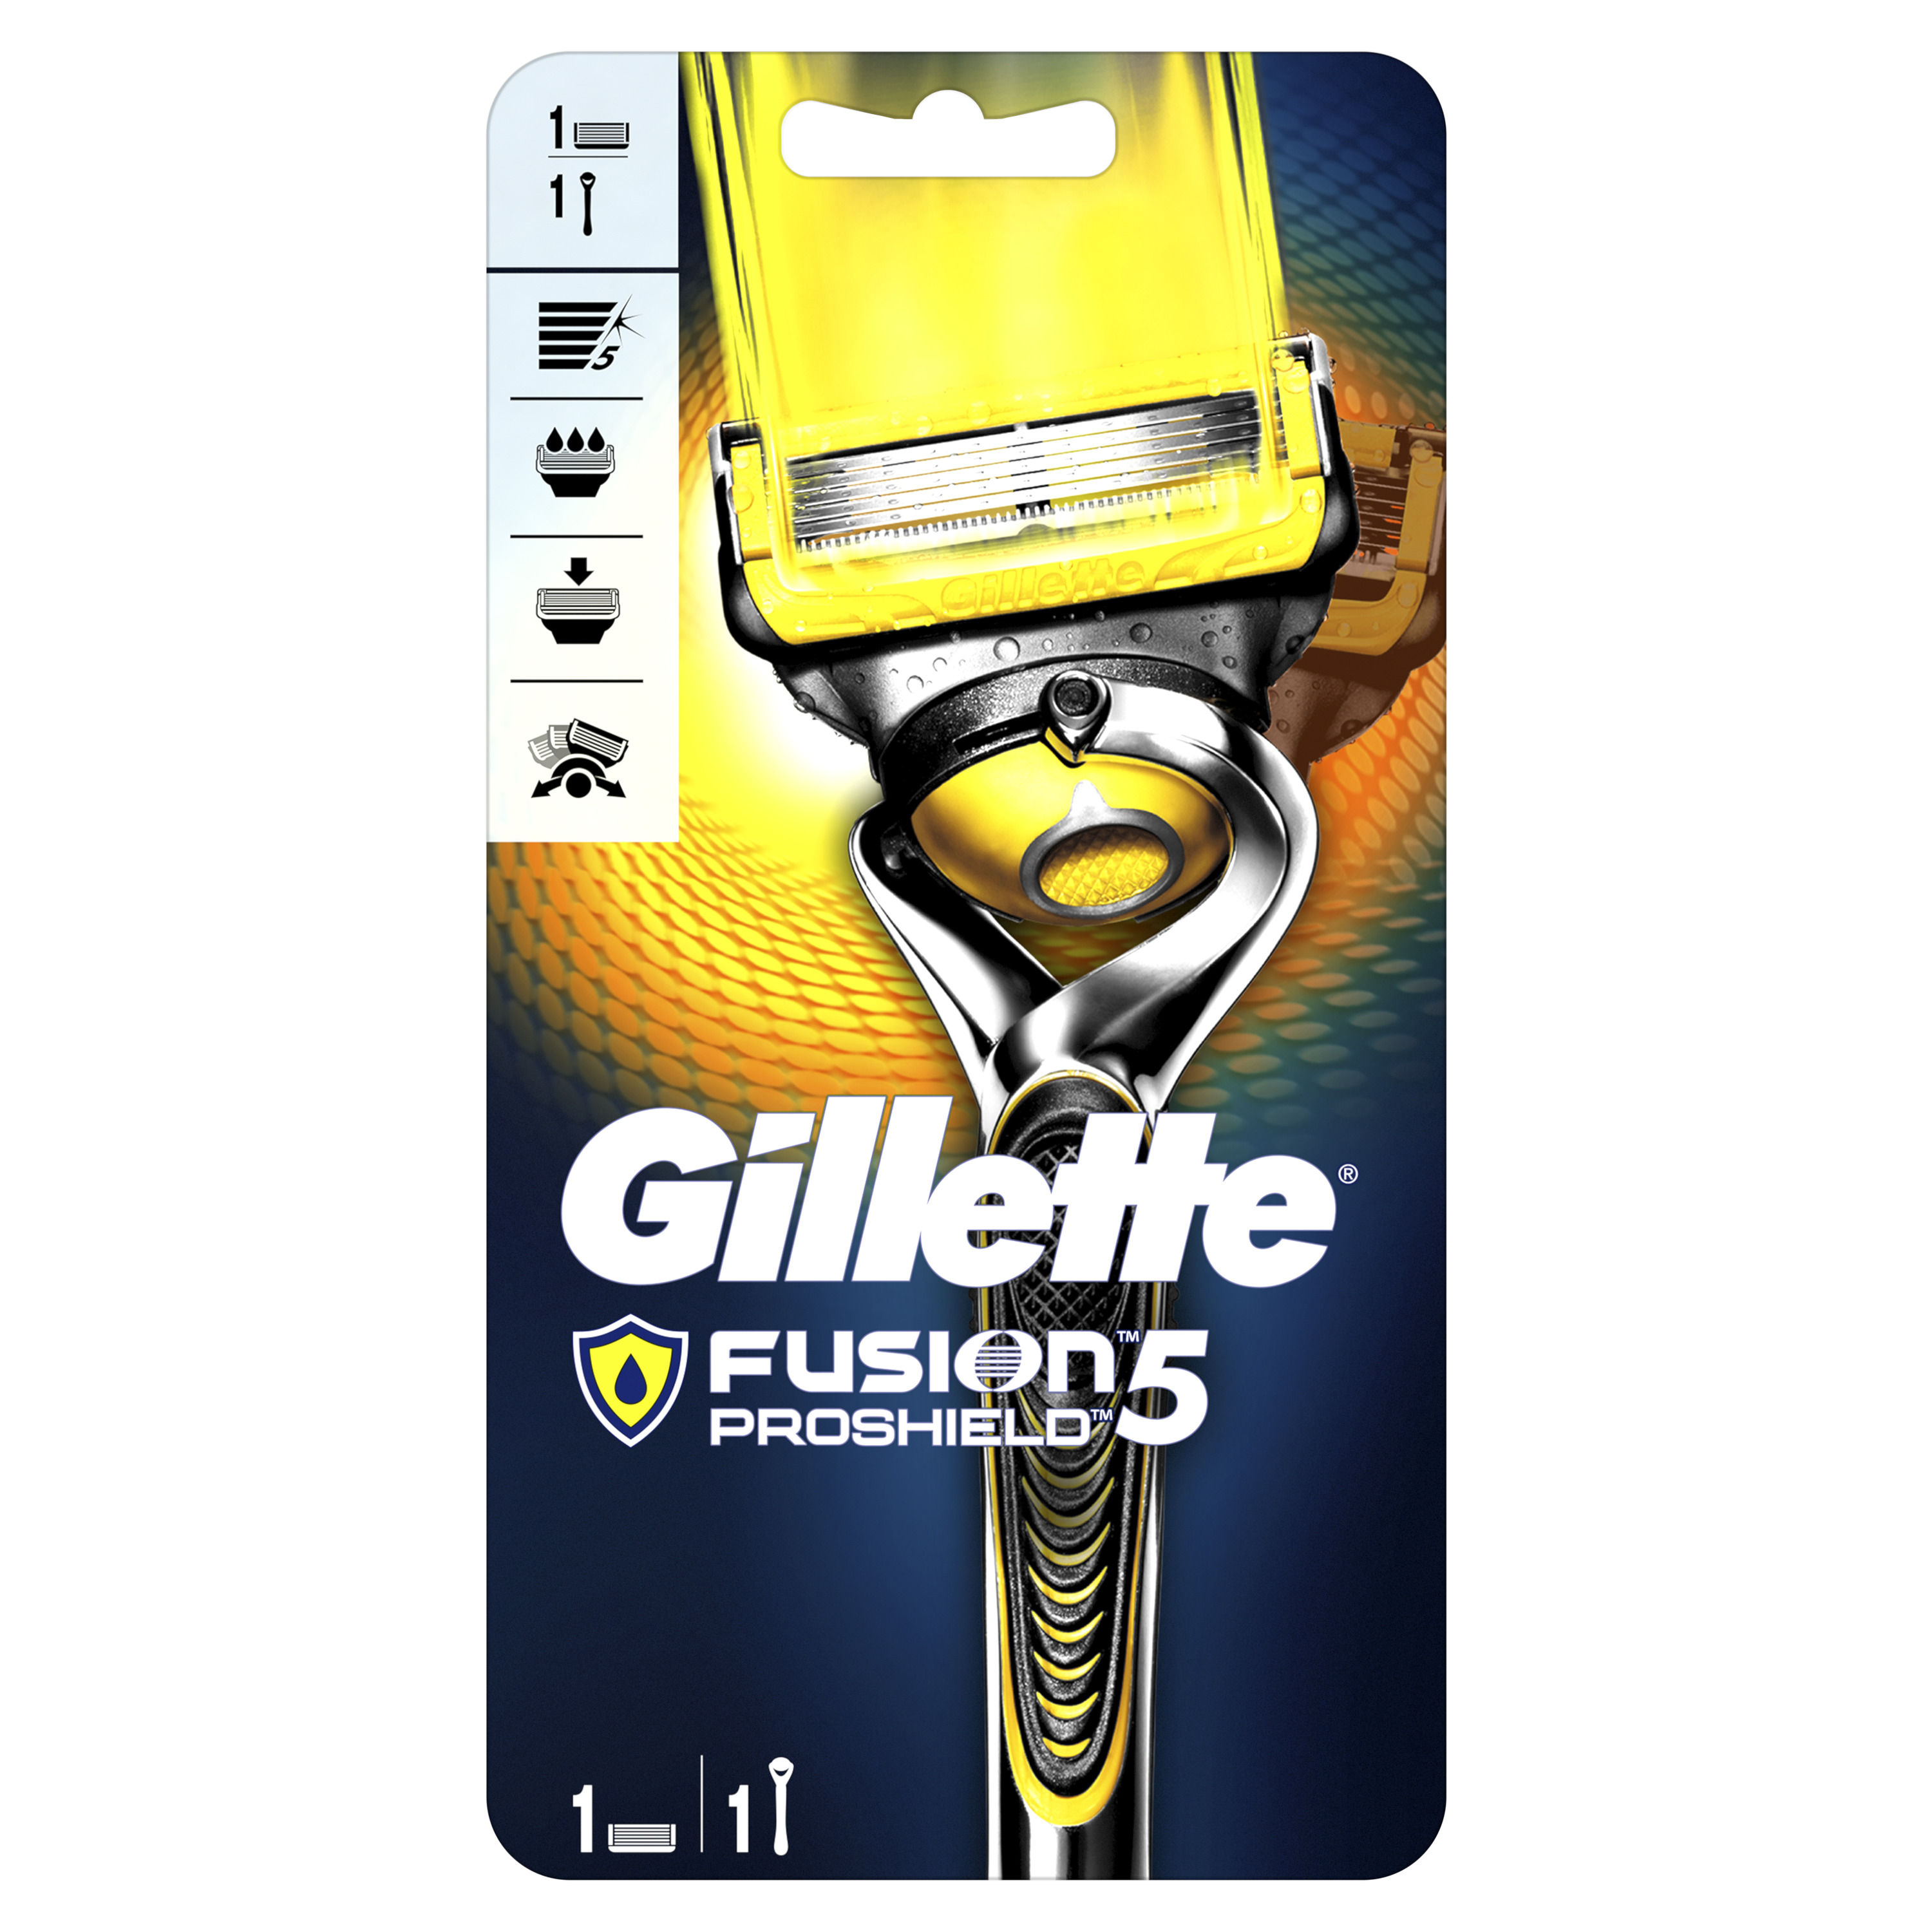 Мужская бритва Gillette Fusion5 ProShield с 1 сменной кассетой станок для бритья deonica 3 лезвия со сменной кассетой и керамическим покрытием бритва жен